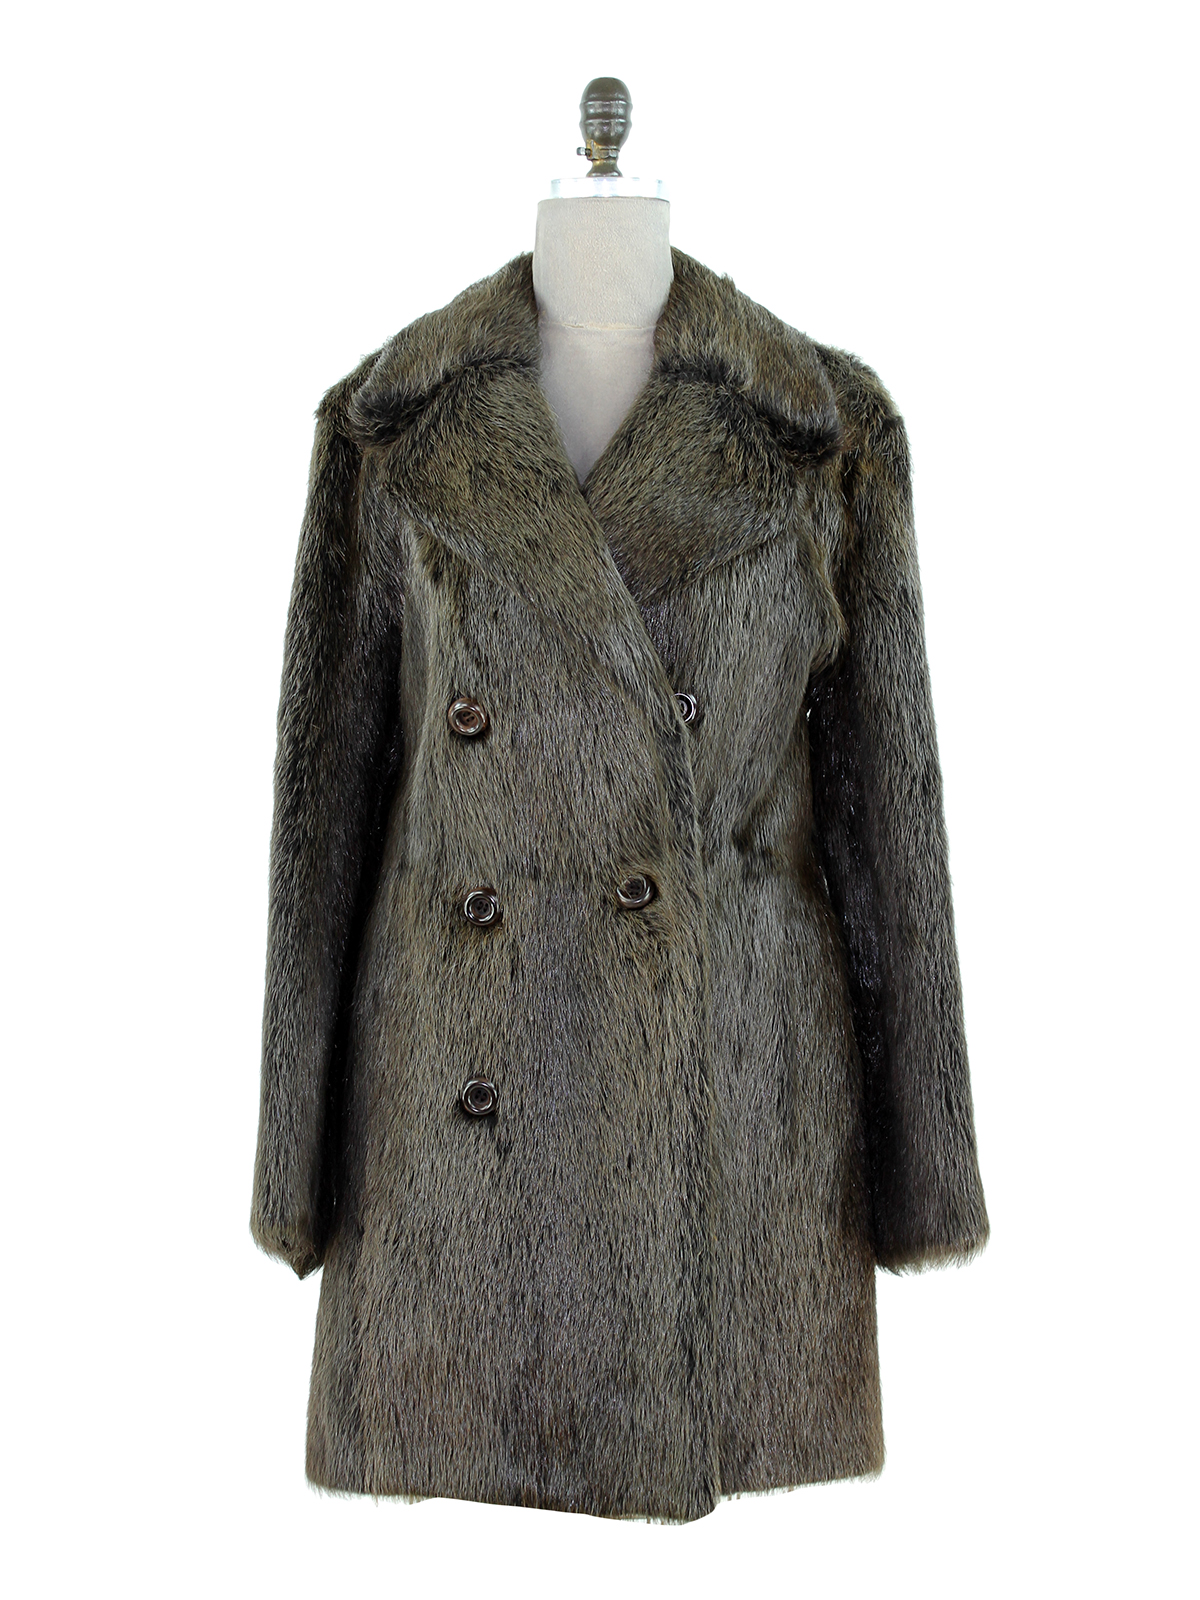 Nutria Fur Double-breasted Coat - Men's Medium| Estate Furs